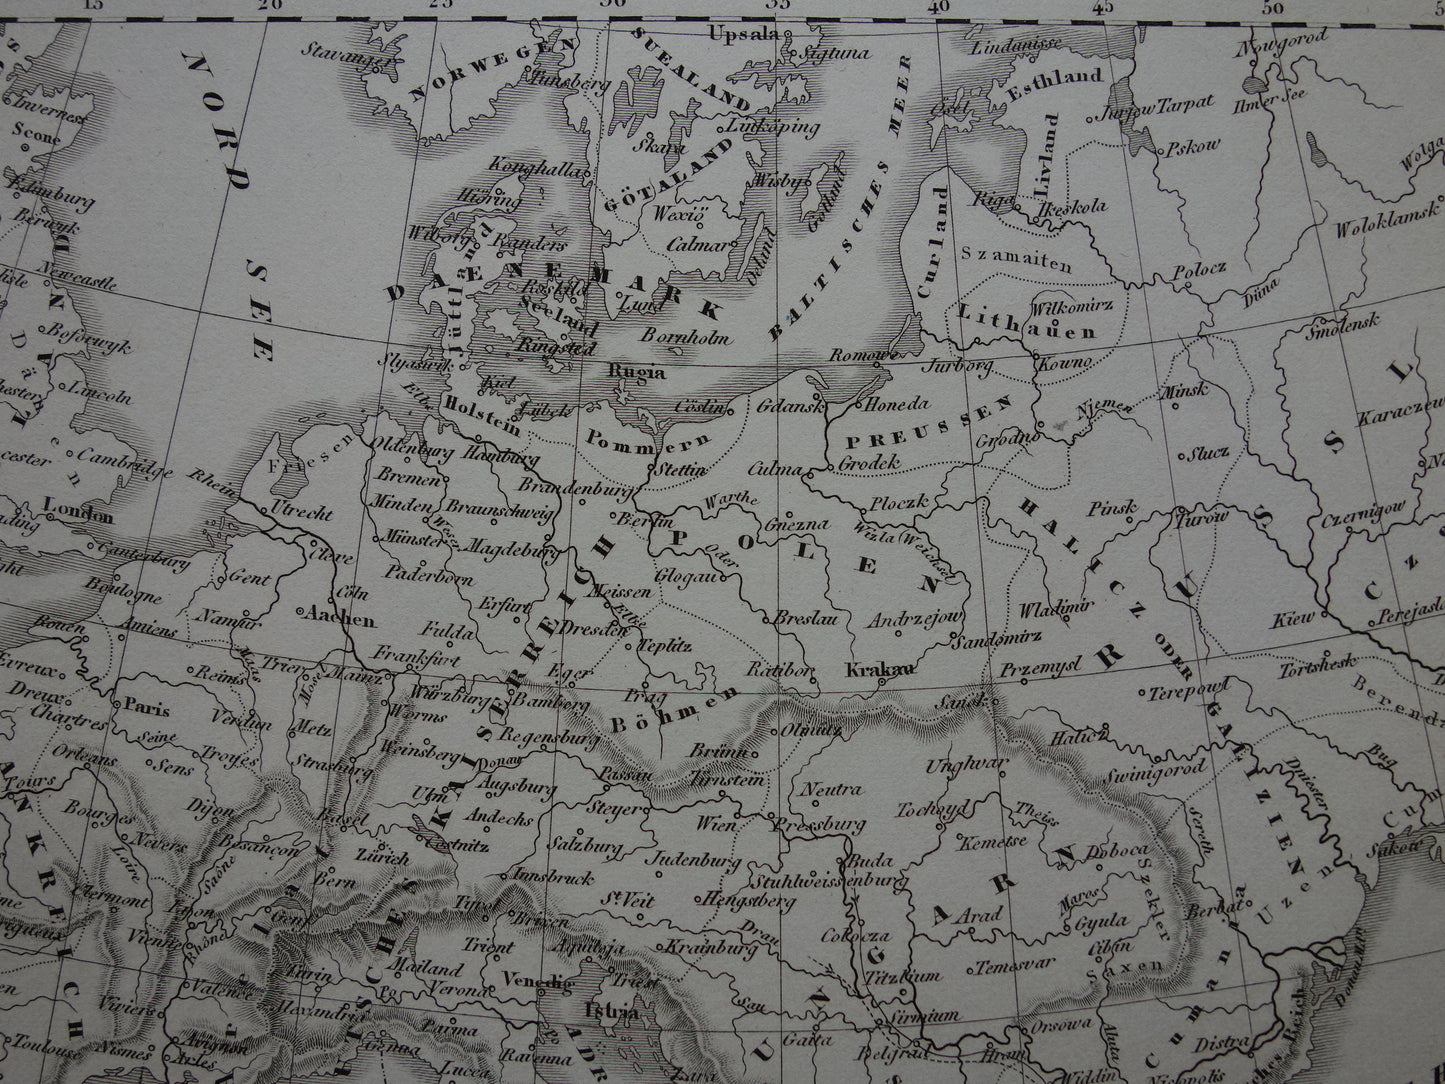 Antieke kaart van EUROPA tijdens kruistochten 170+ jaar oude landkaart van continent uit 1849 - originele vintage historische kaarten